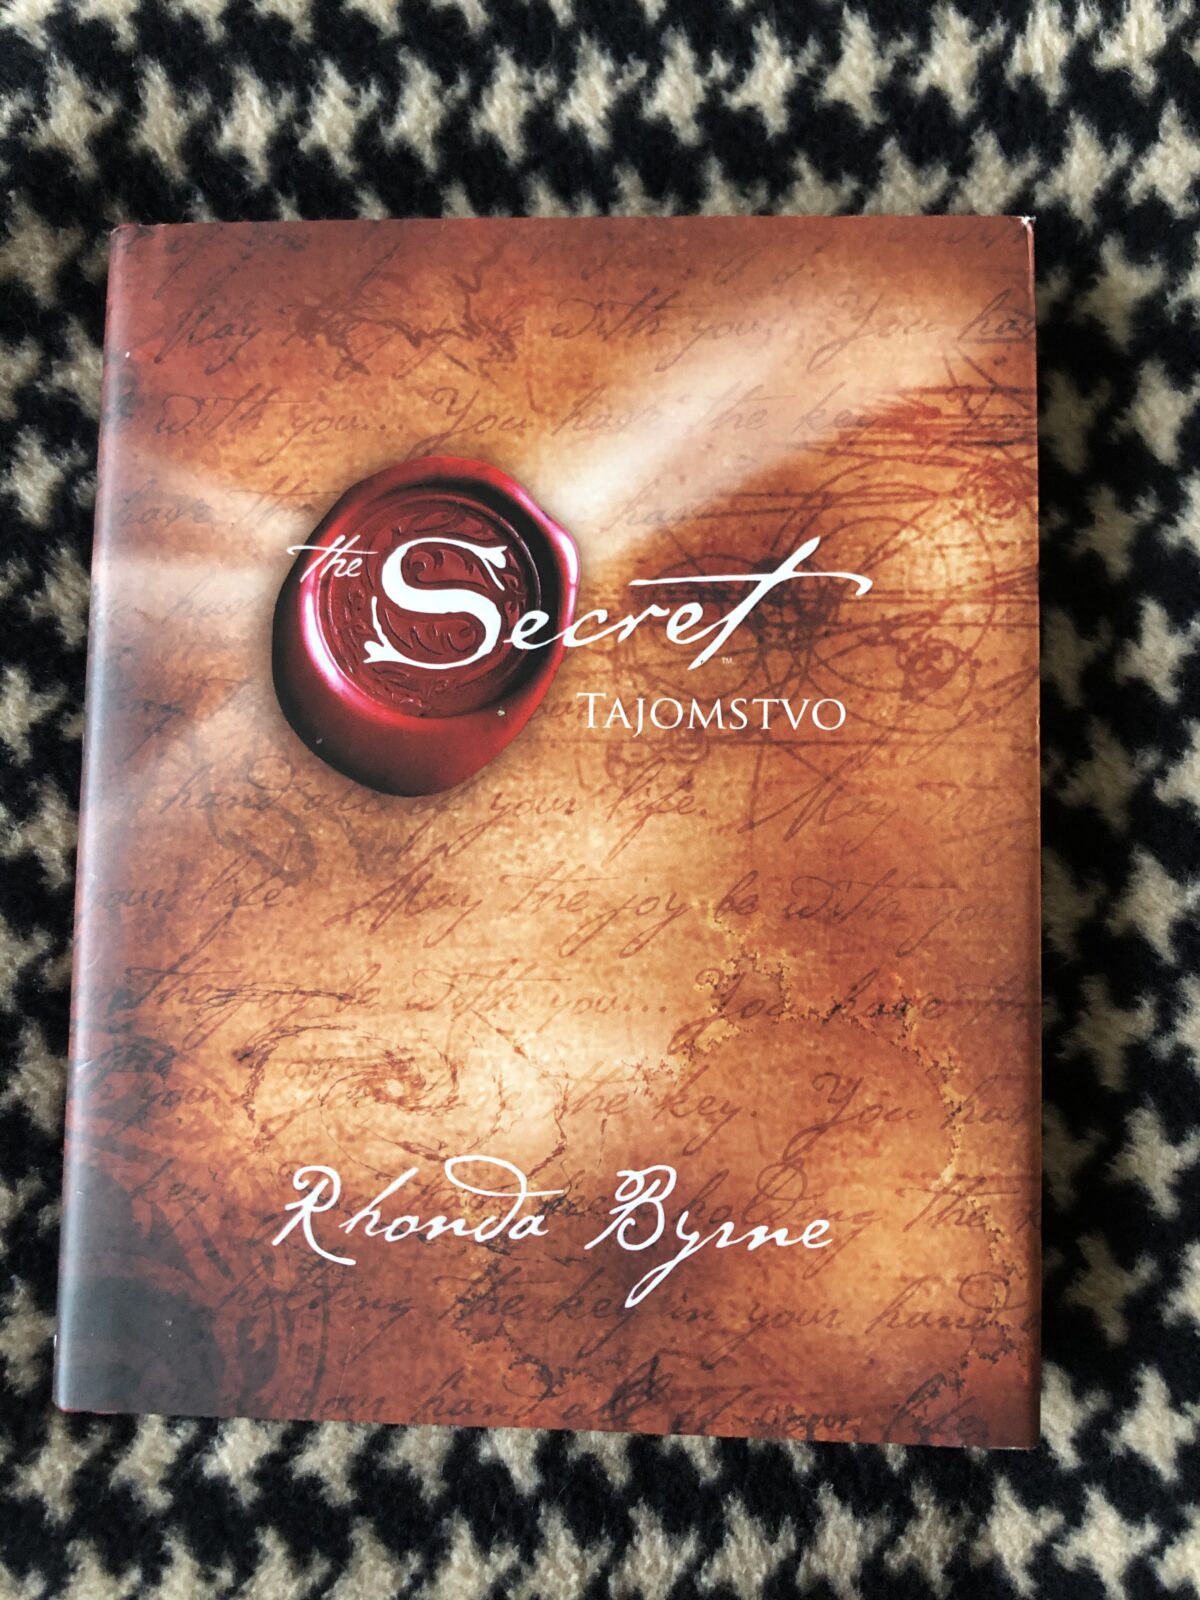 Slovenské Tajemství - úžasná kniha jak dostat vše, po čem toužíme